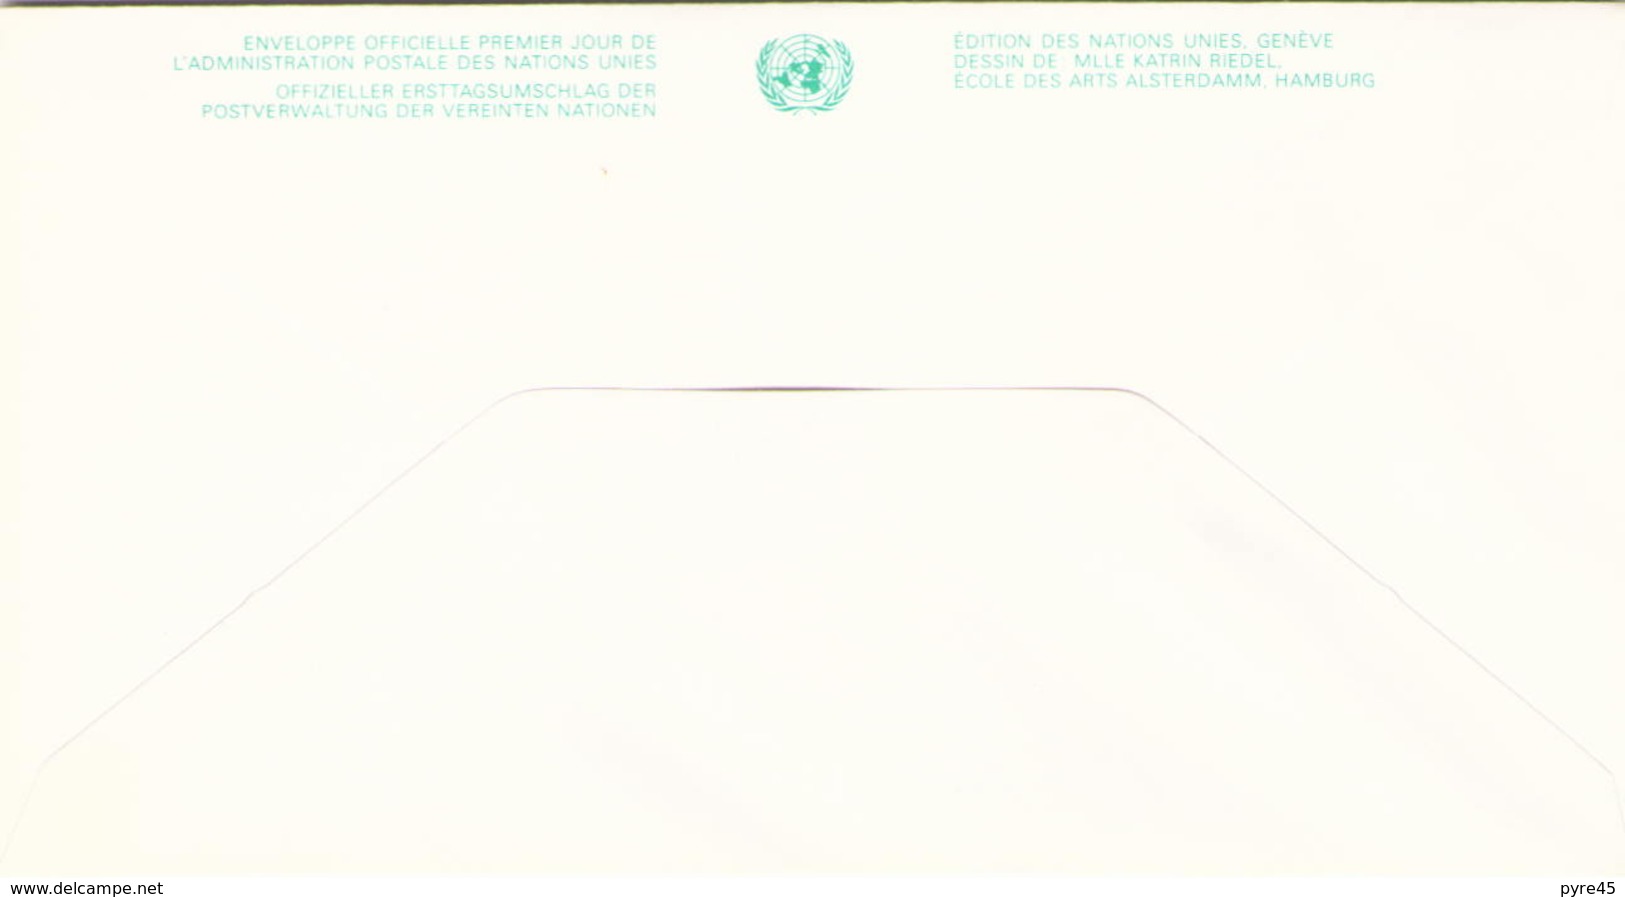 NATIONS UNIES FDC DU 24 OCTOBRE 1991 NEW YORK 40° ANNIVERSAIRE DE L ADMINISTRATION POSTALE DES NATIONS UNIES - Lettres & Documents